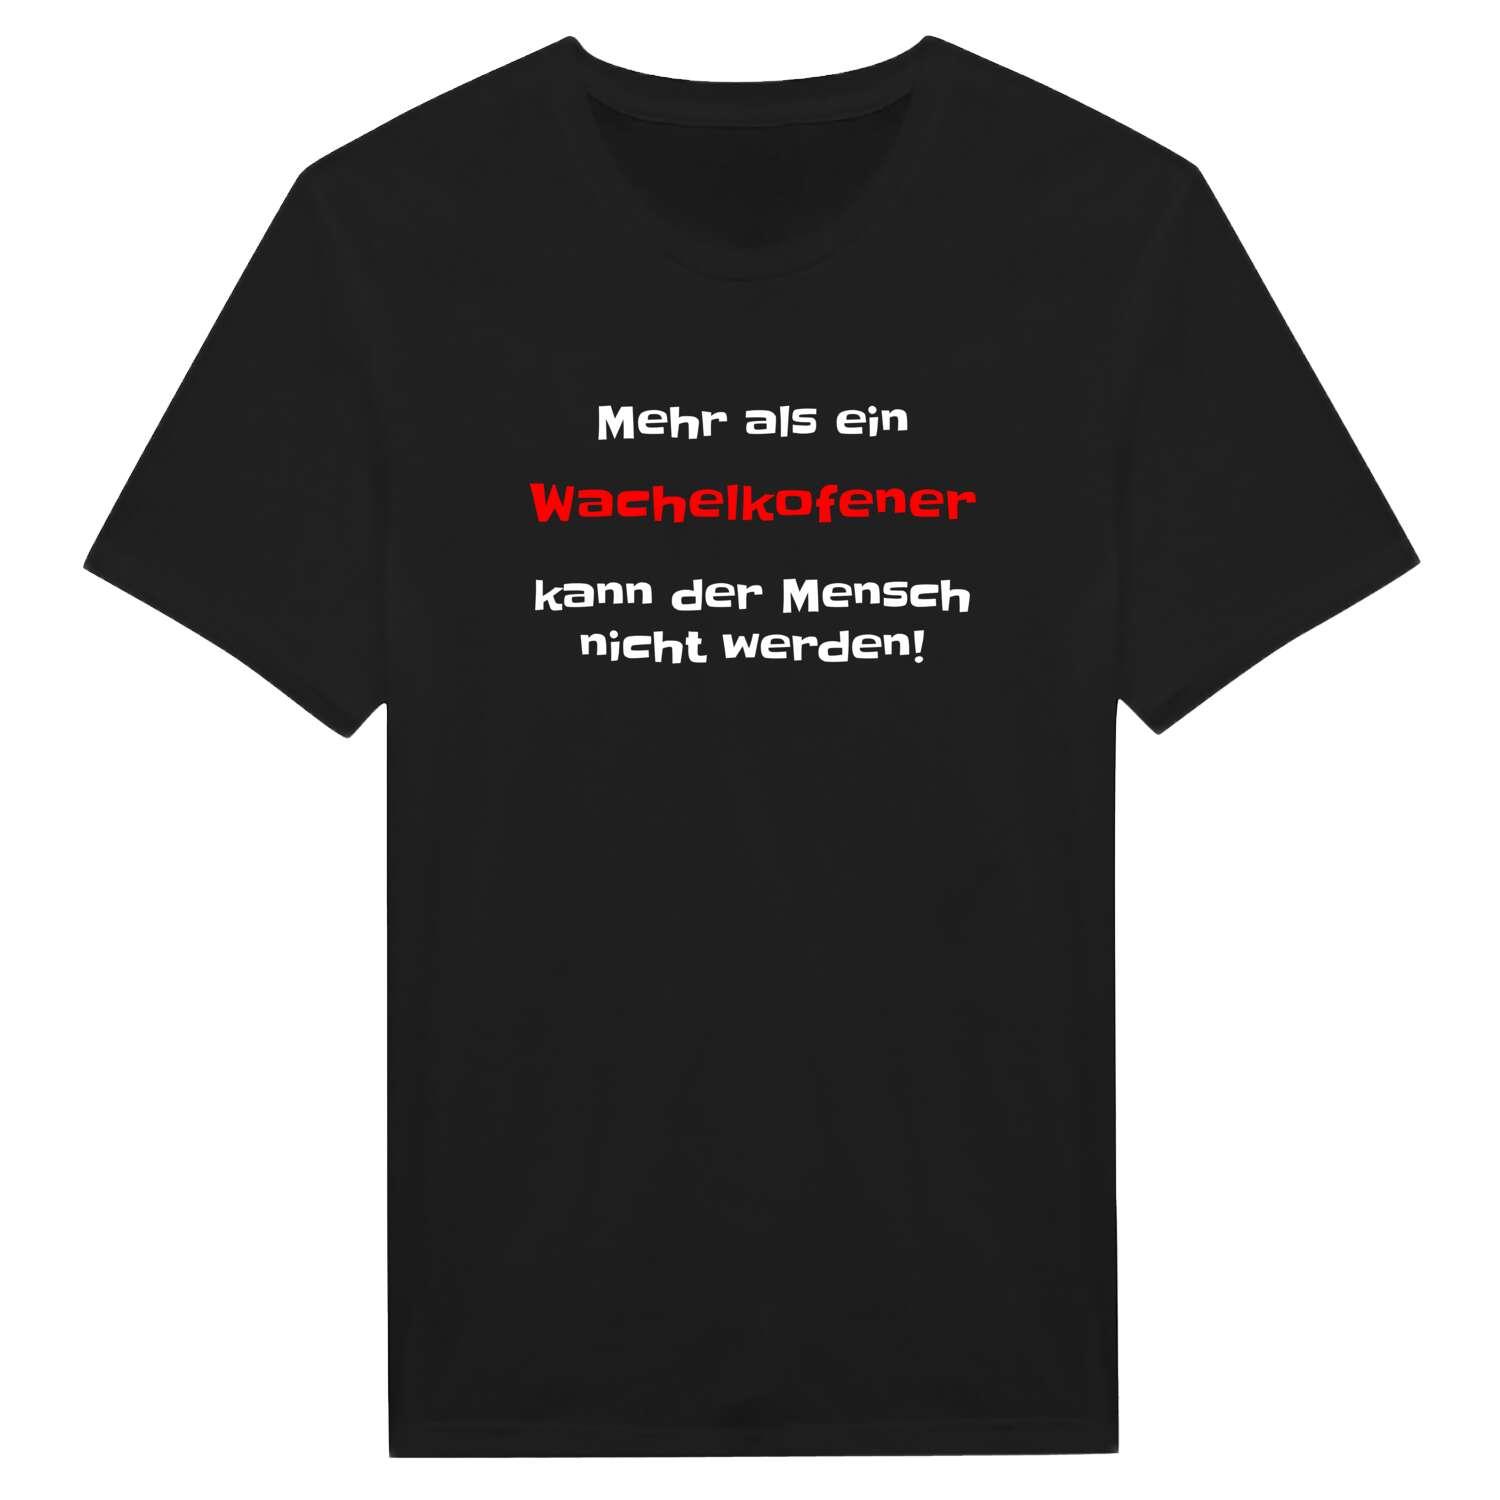 Wachelkofen T-Shirt »Mehr als ein«